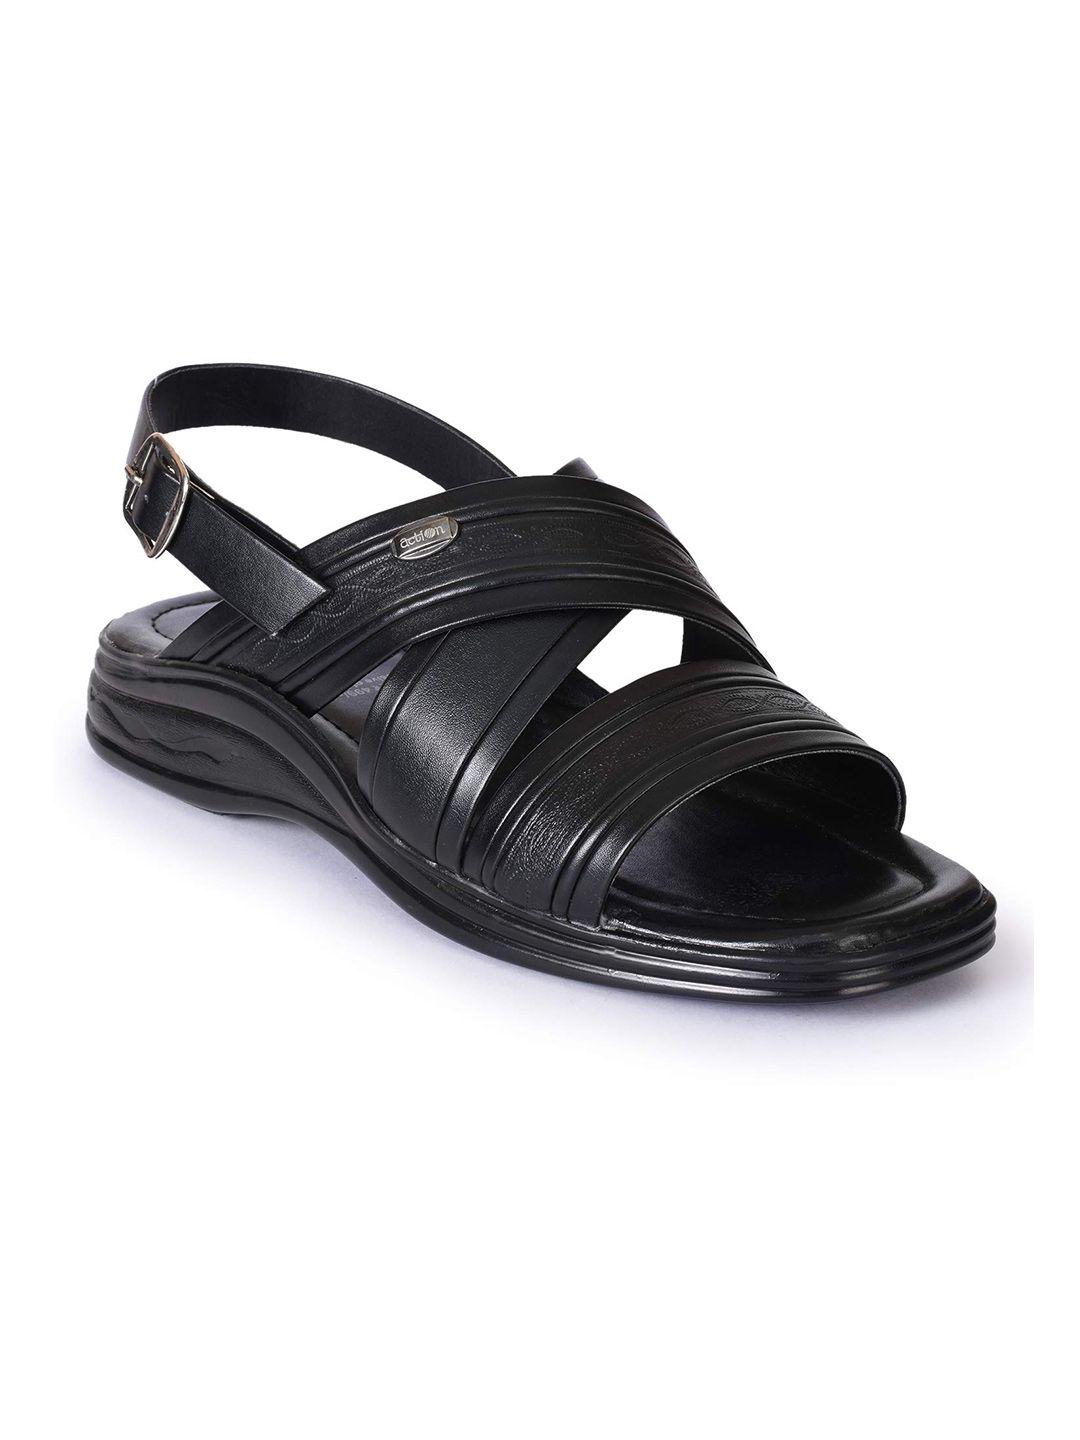 action men textured open toe comfort foam comfort sandals with buckle closure